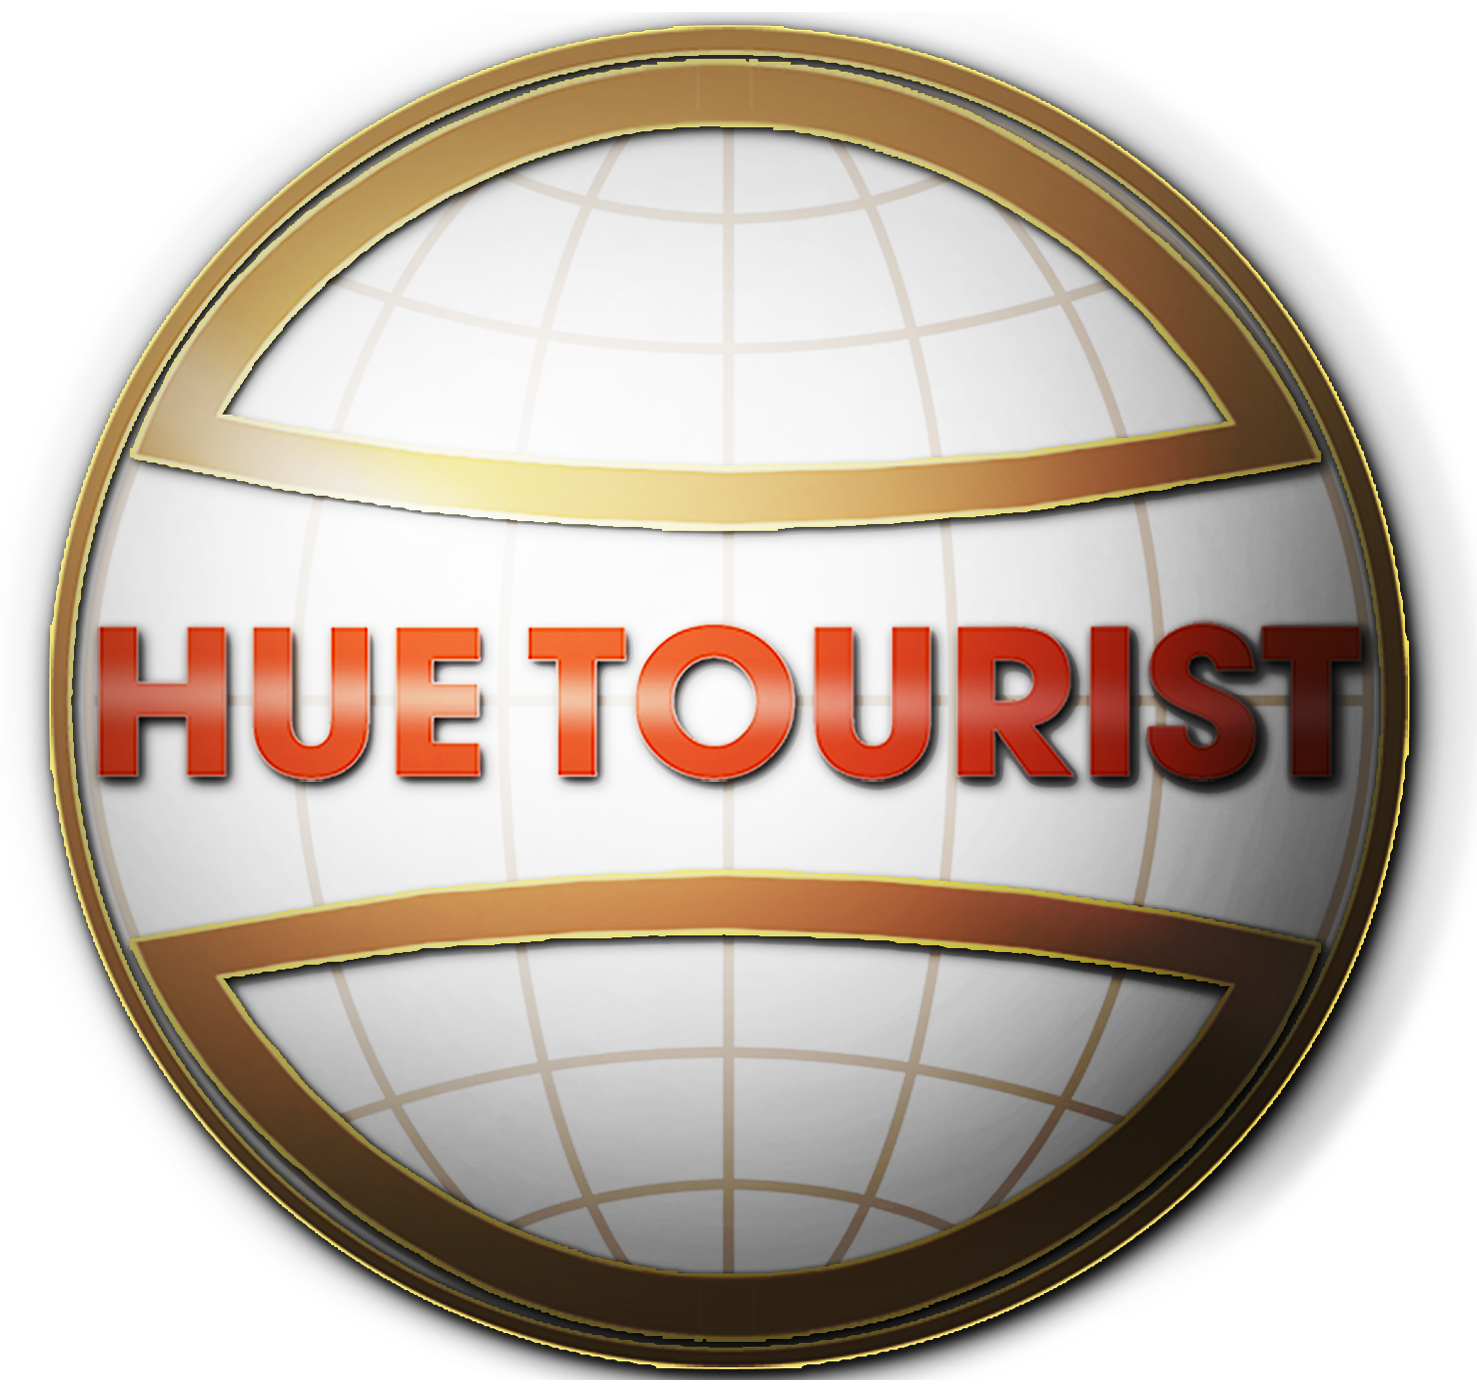 Hue Tourist logo